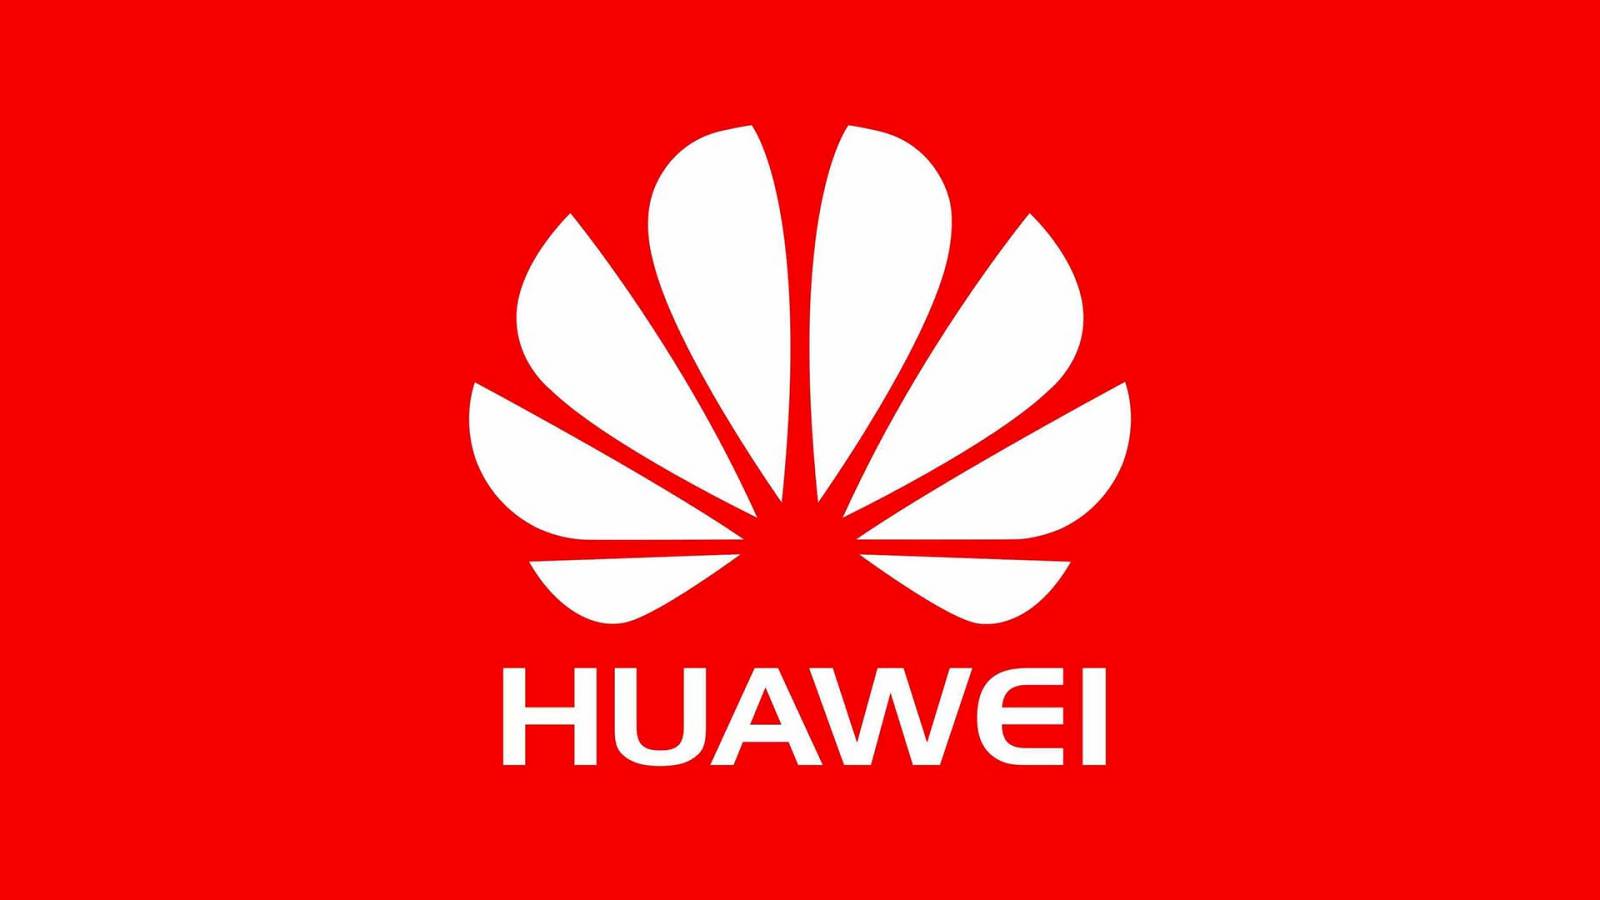 Huawei wydawało się CAŁKOWICIE NIEMOŻLIWE Zaskakując wiele osób